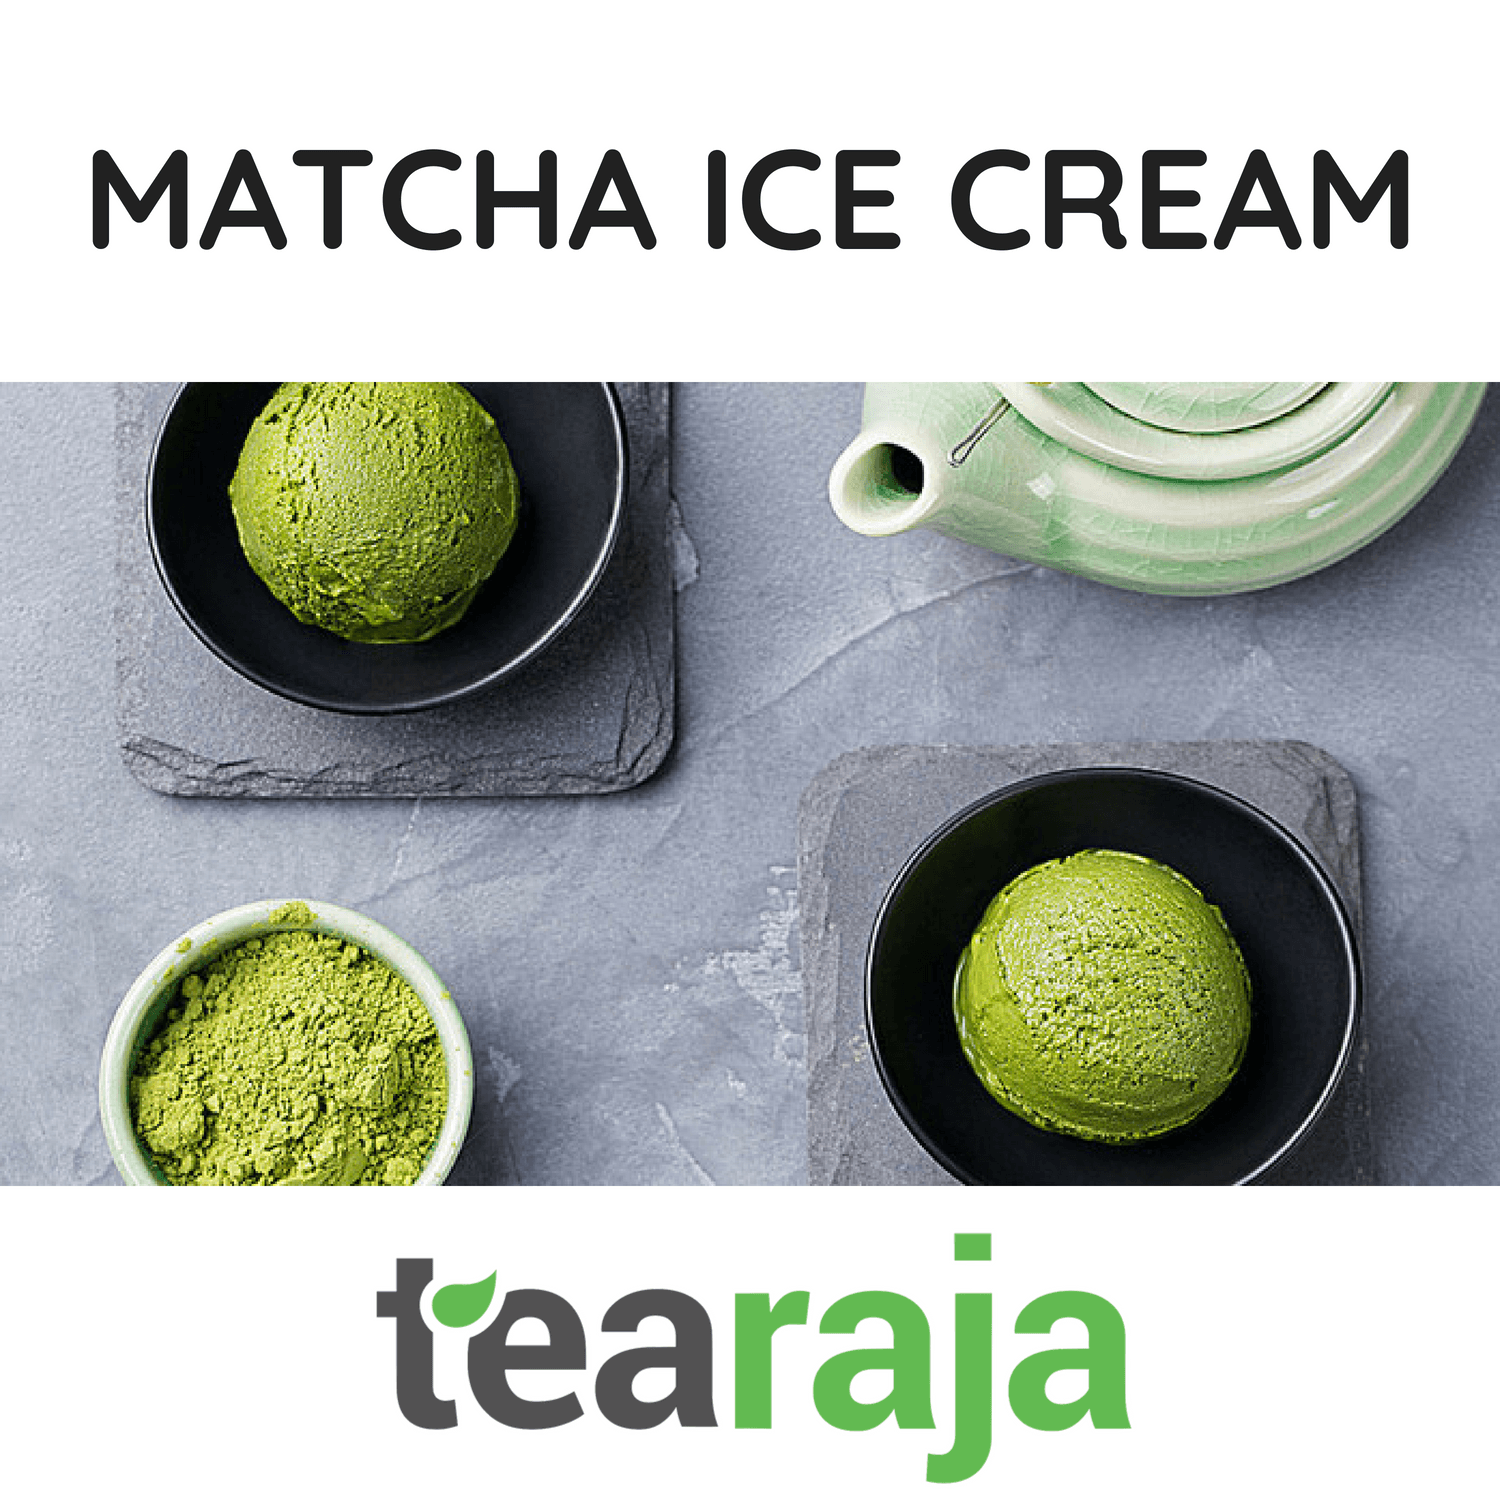 Organic Matcha Green Tea - Tearaja